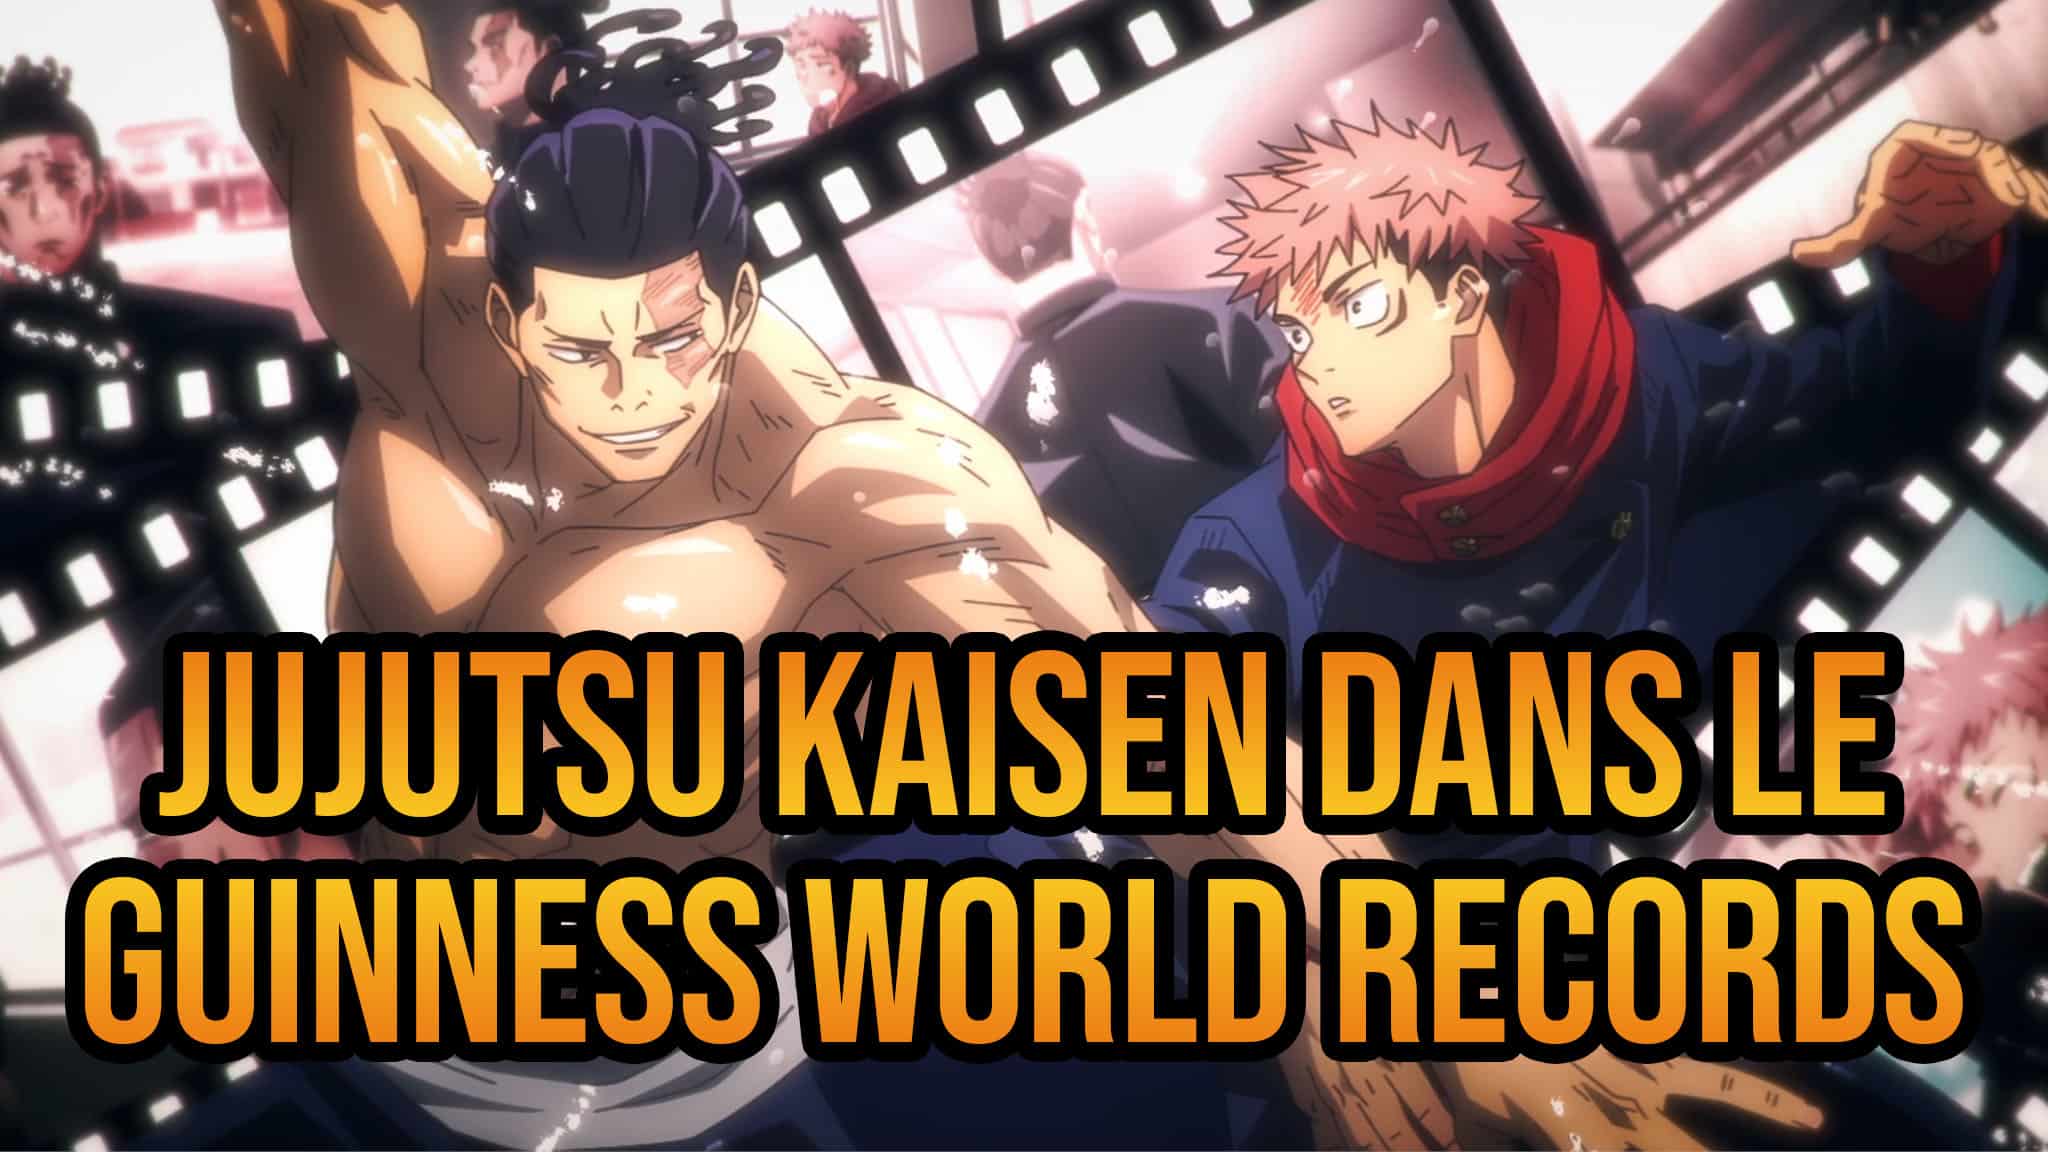 L'anime Jujutsu Kaisen entre dans le Guinness World Records 2025 en tant que série d'animation la plus demandée.